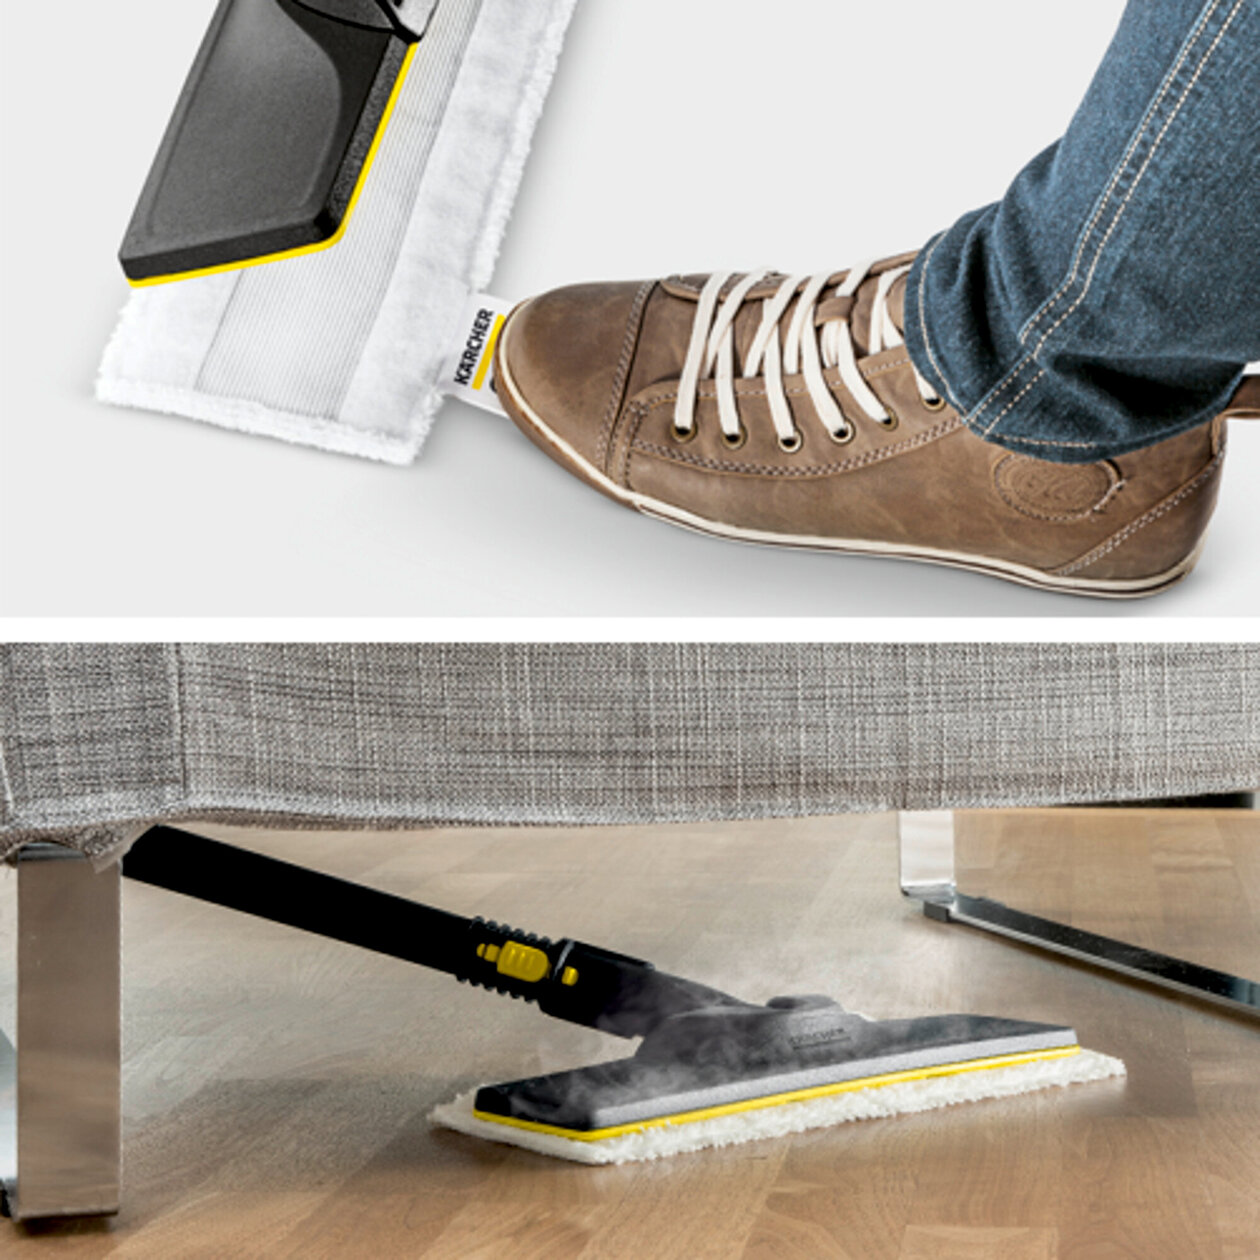  Parný čistič SC 1 EasyFix: Súprava na čistenie podlahy EasyFix s flexibilným kĺbom na podlahovej hubici a pohodlným suchým zipsom na upevnenie utierky na podlahu